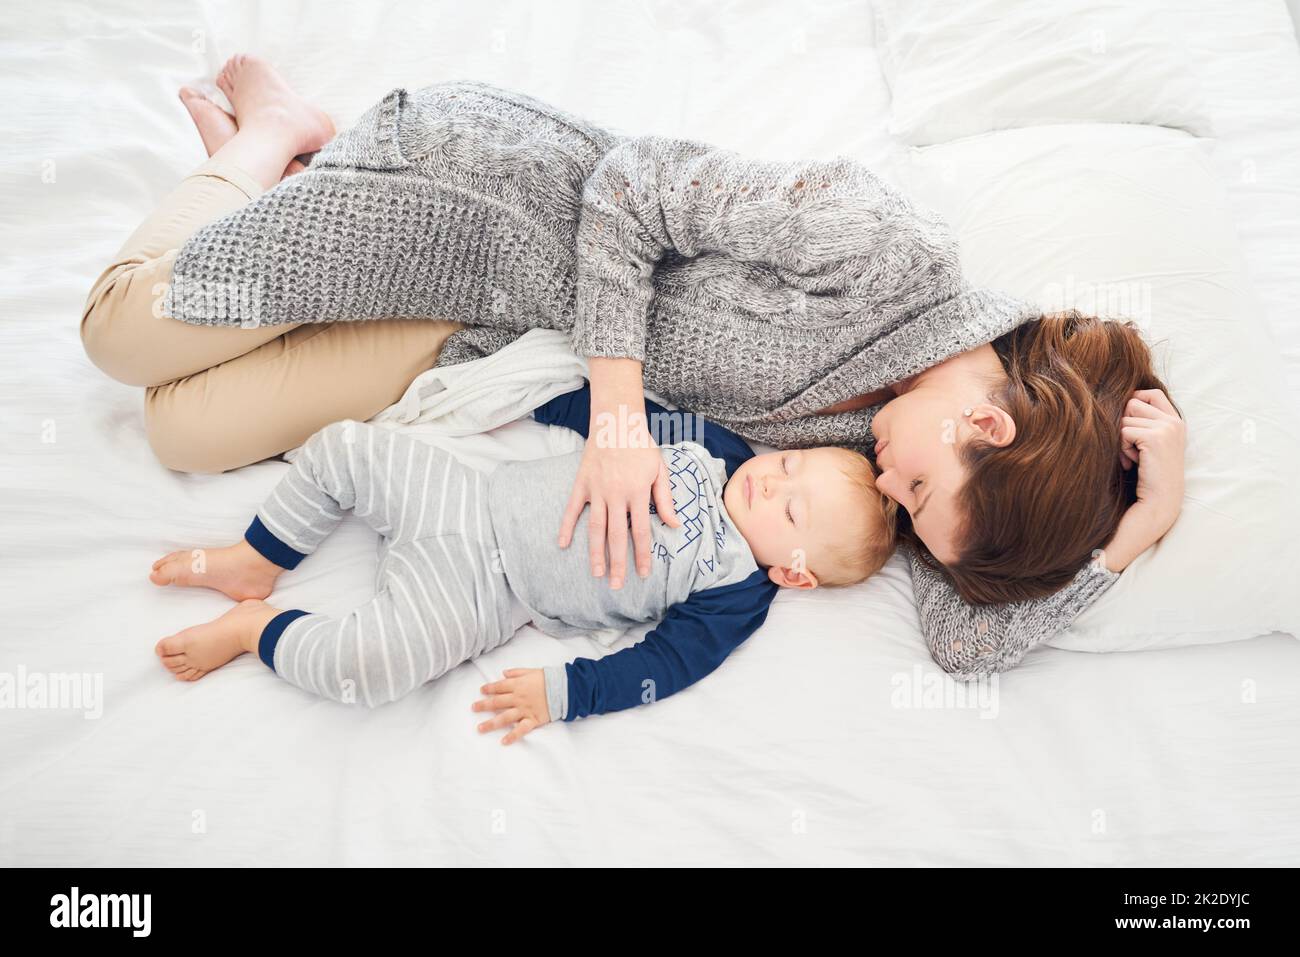 Des mamans se joignent à lui pour la sieste. Photo d'une mère et de son bébé garçon dormant ensemble à la maison. Banque D'Images